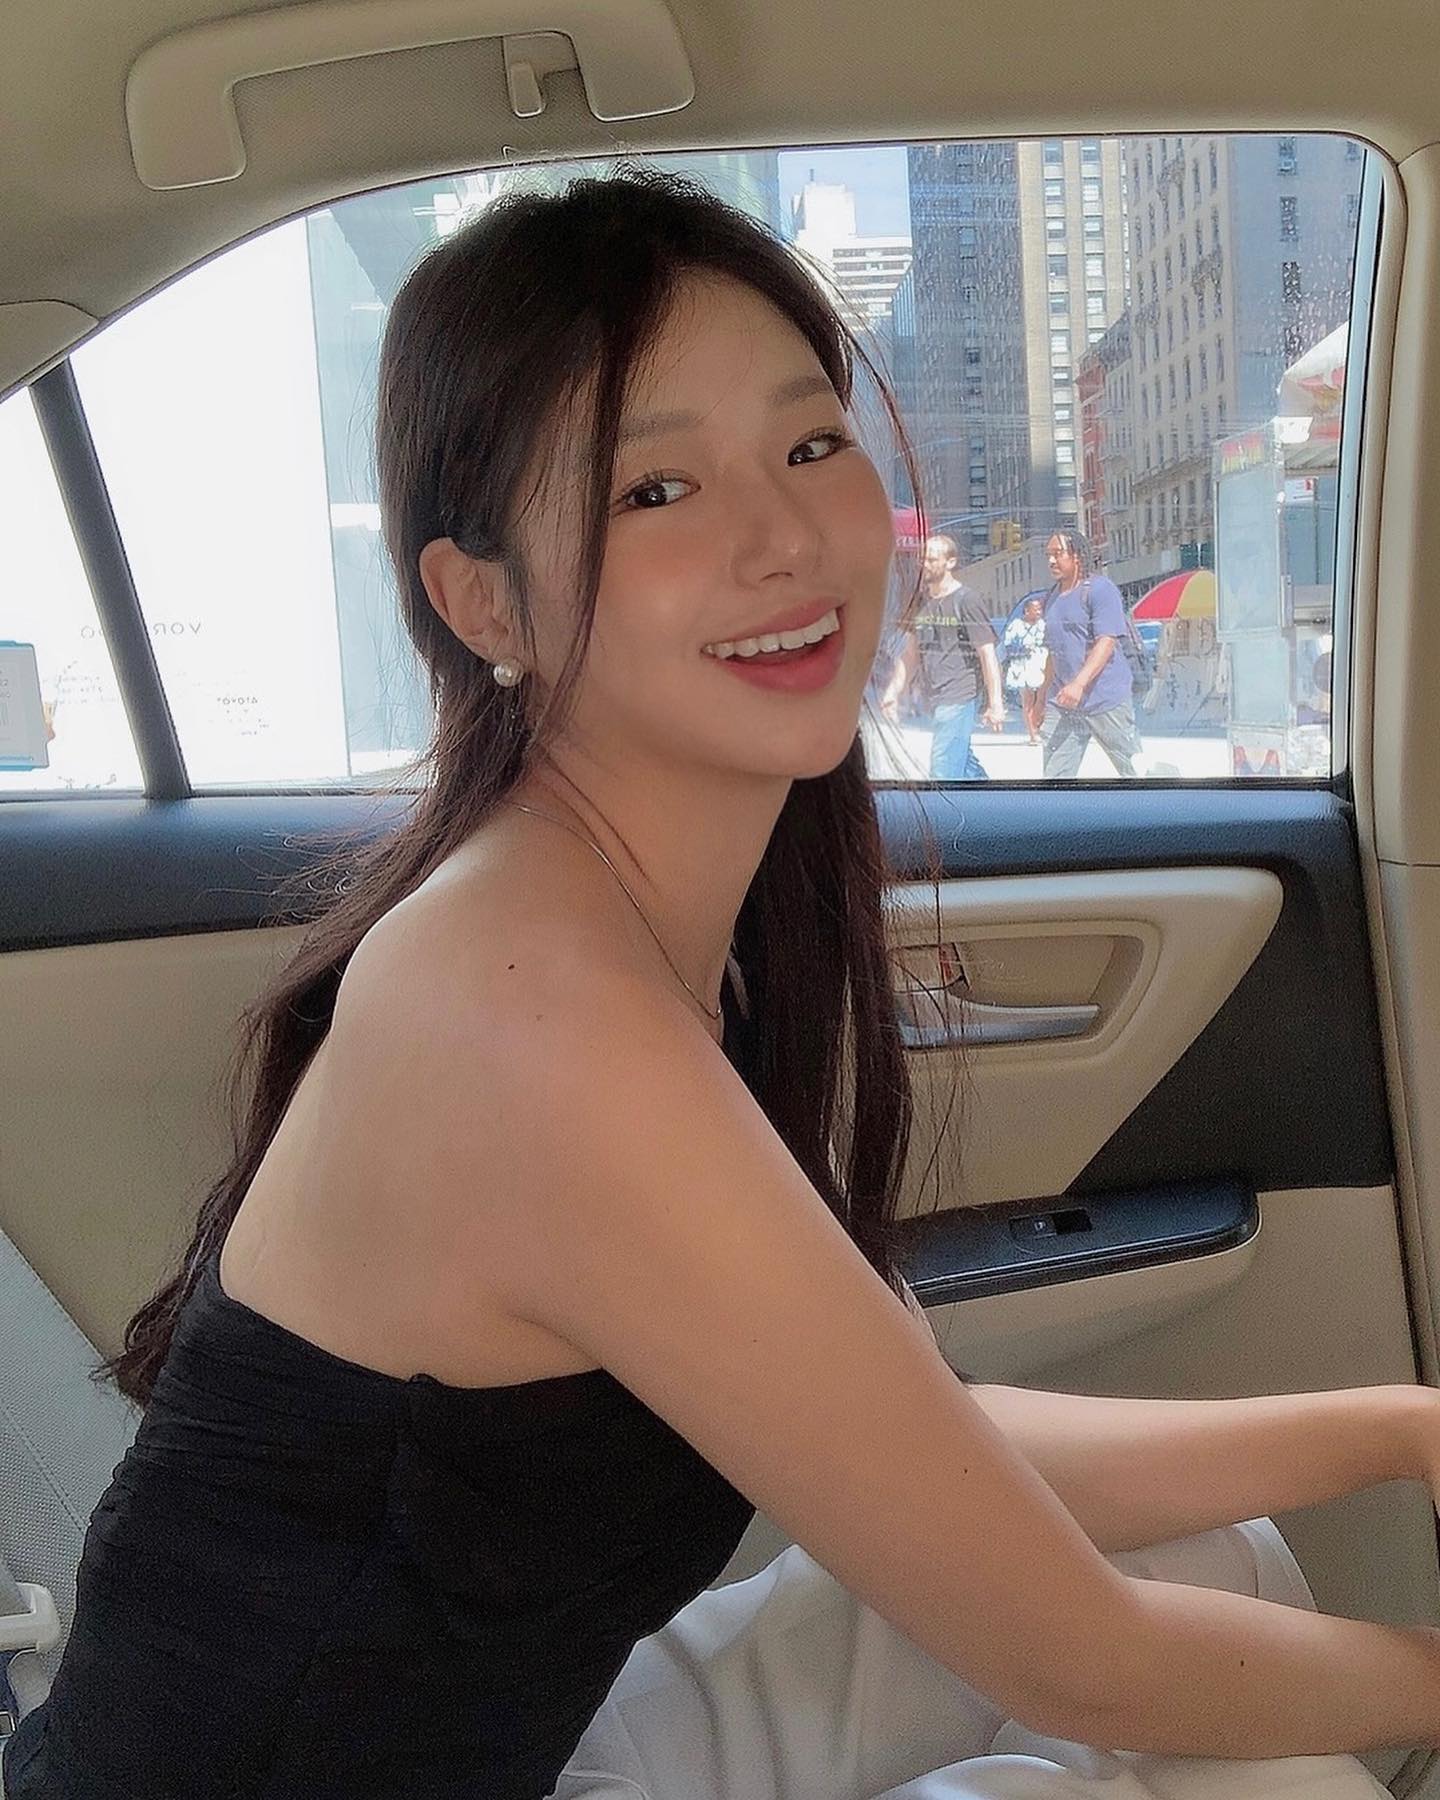 뉴욕 택시 안에서. 보기만 해도 기분이 좋아지는 싱그러운 그녀의 미소.